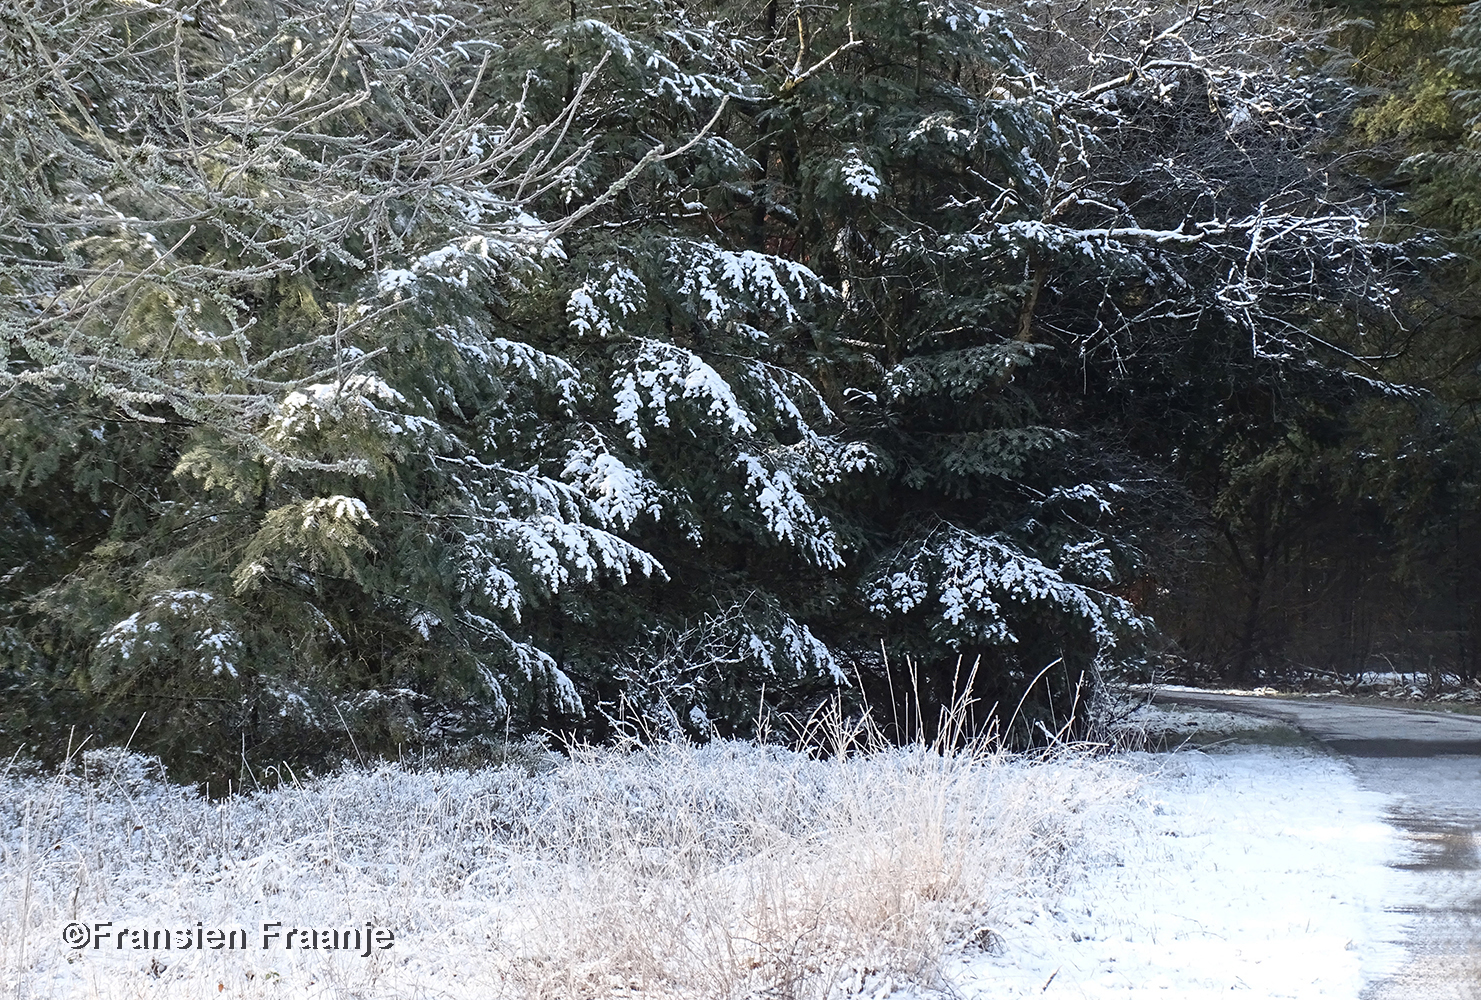 Toch nog een echt winterbeeld met sneeuw op de takken - Foto: ©Fransien Fraanje